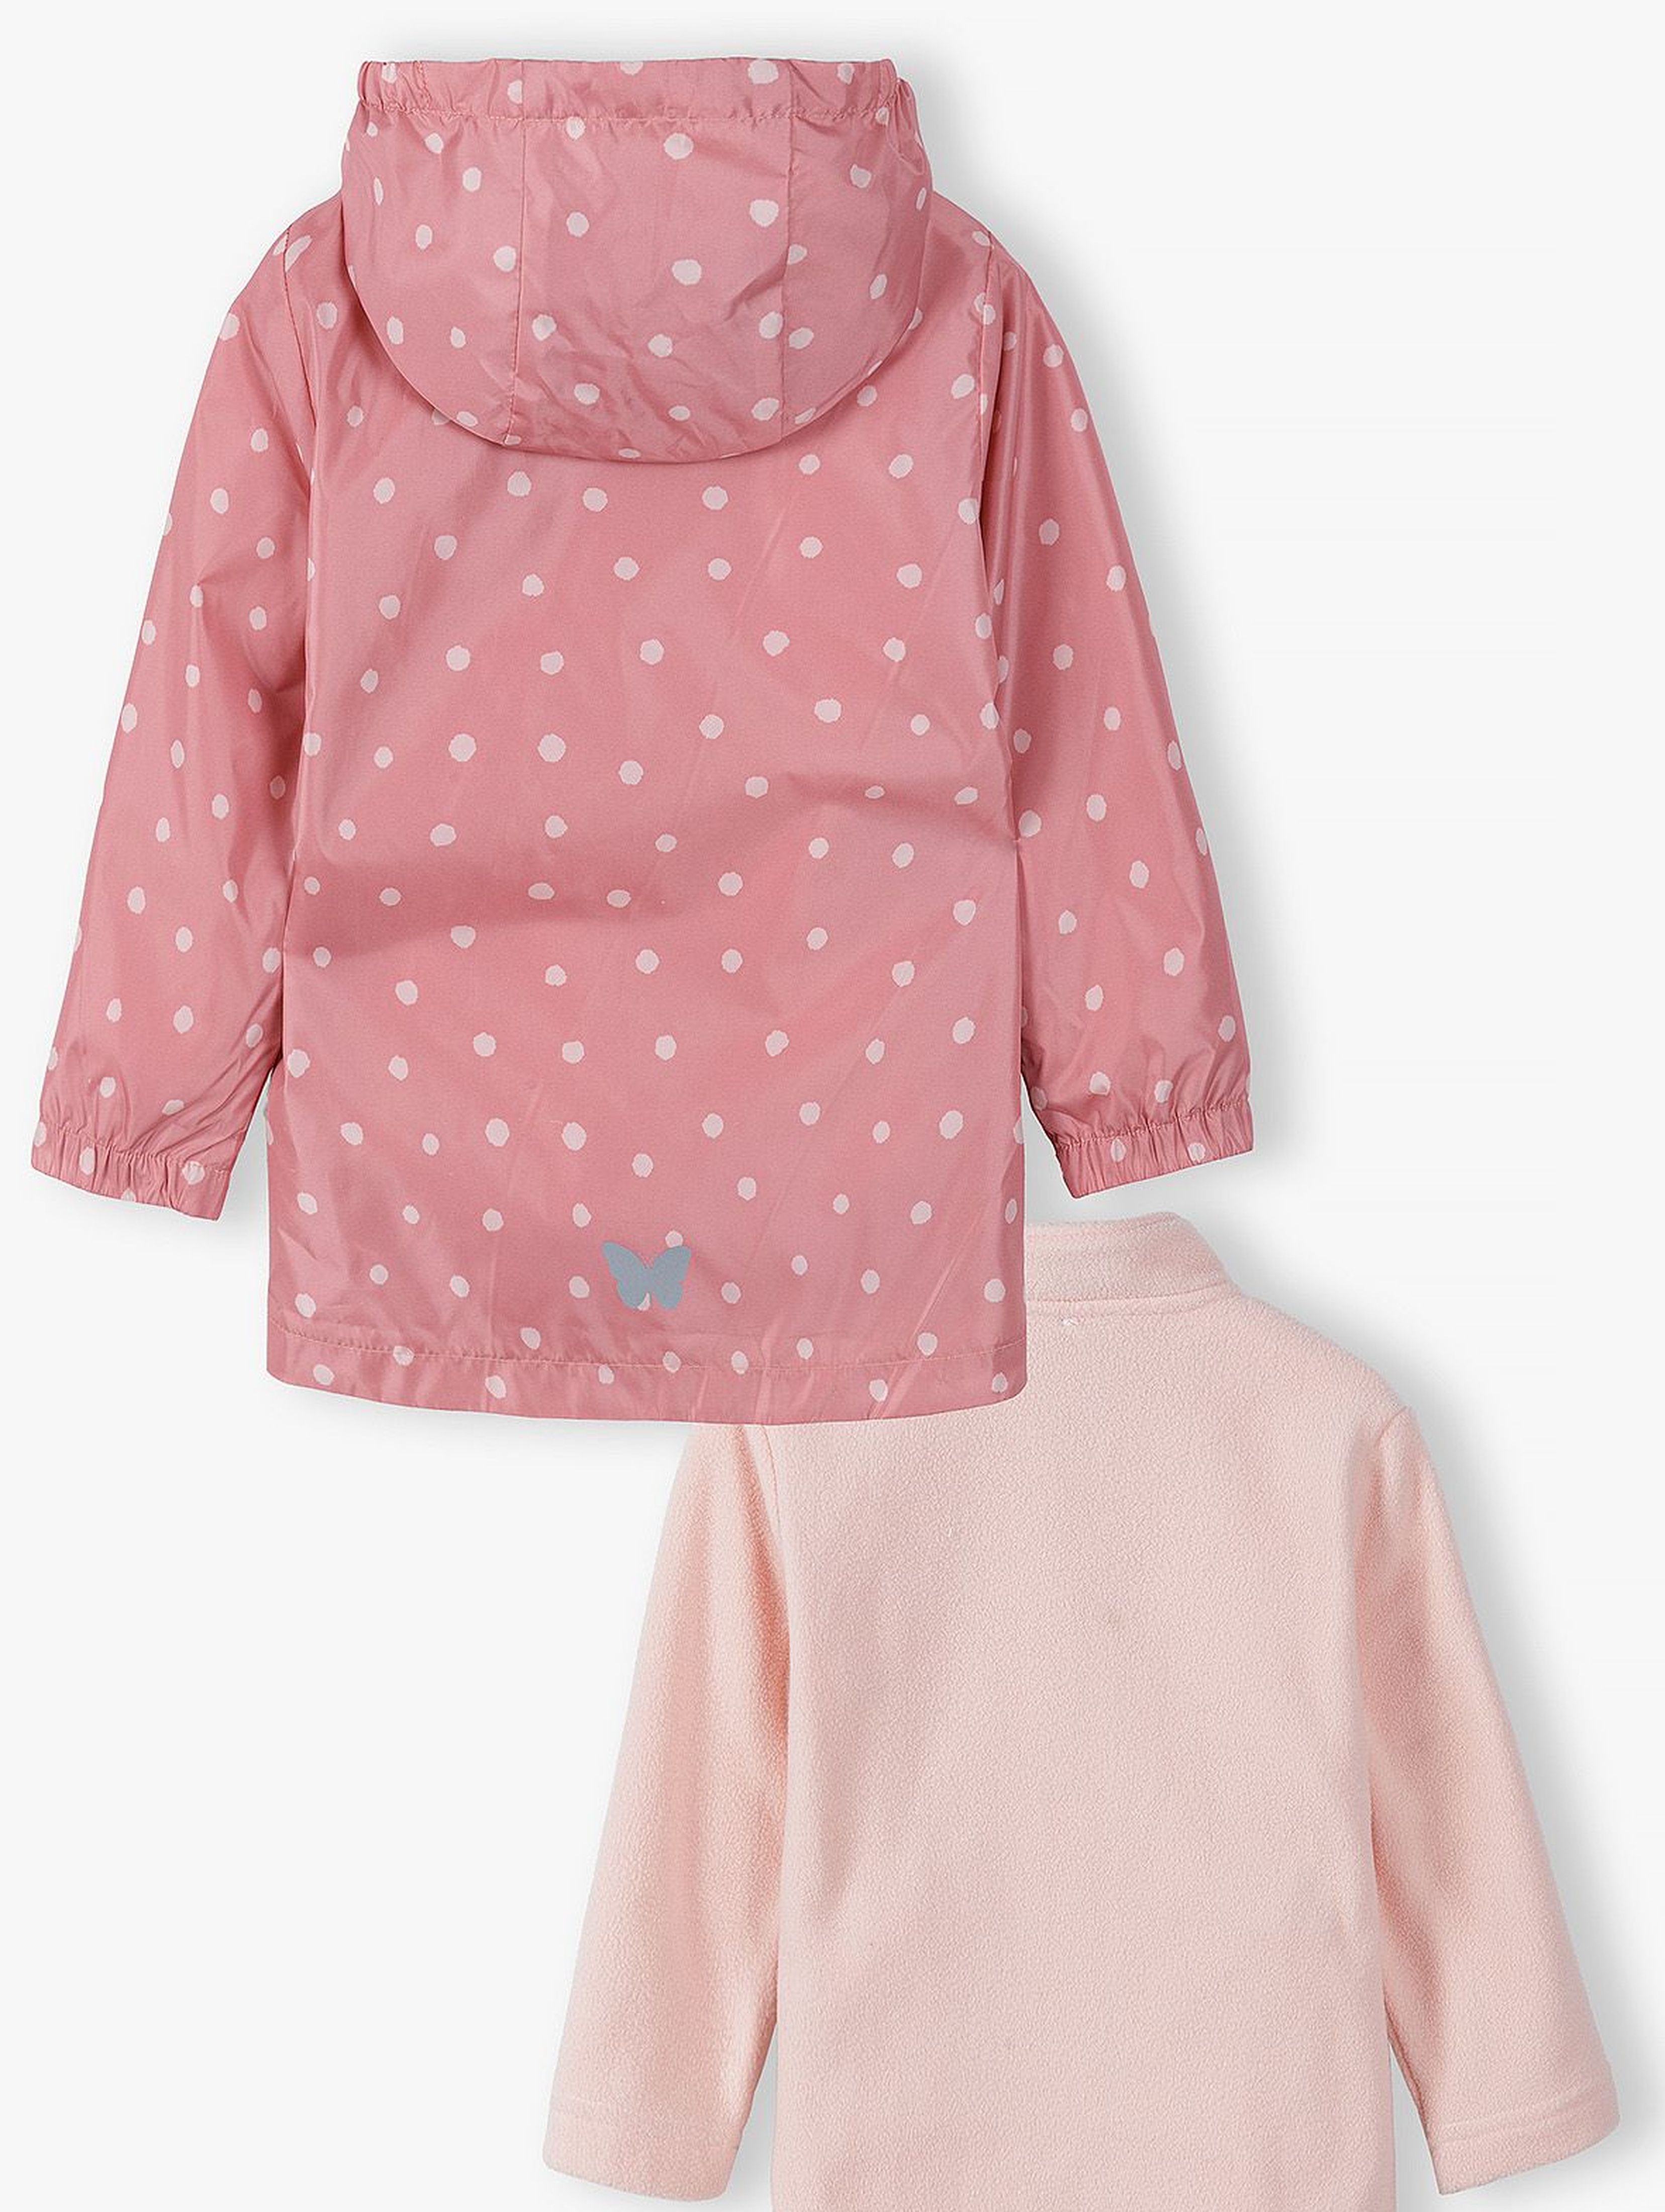 Kurtka przejściowa dziewczęca 3 w1 w kropki różowa z bluzą